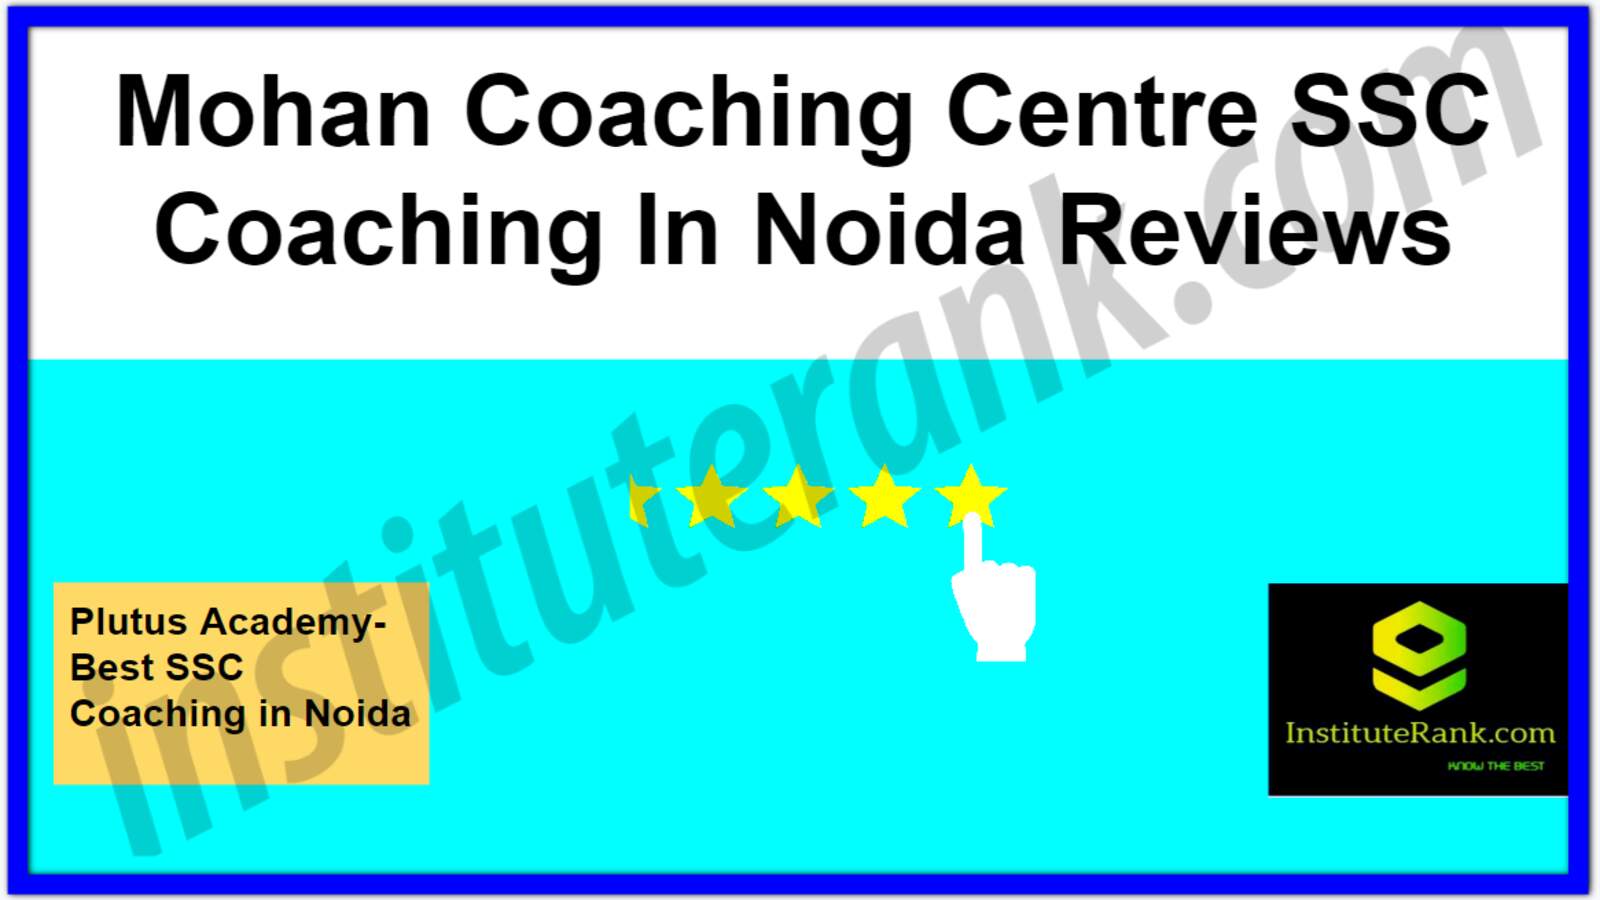 Mohan Coaching Centre SSC Coaching in Noida reviews